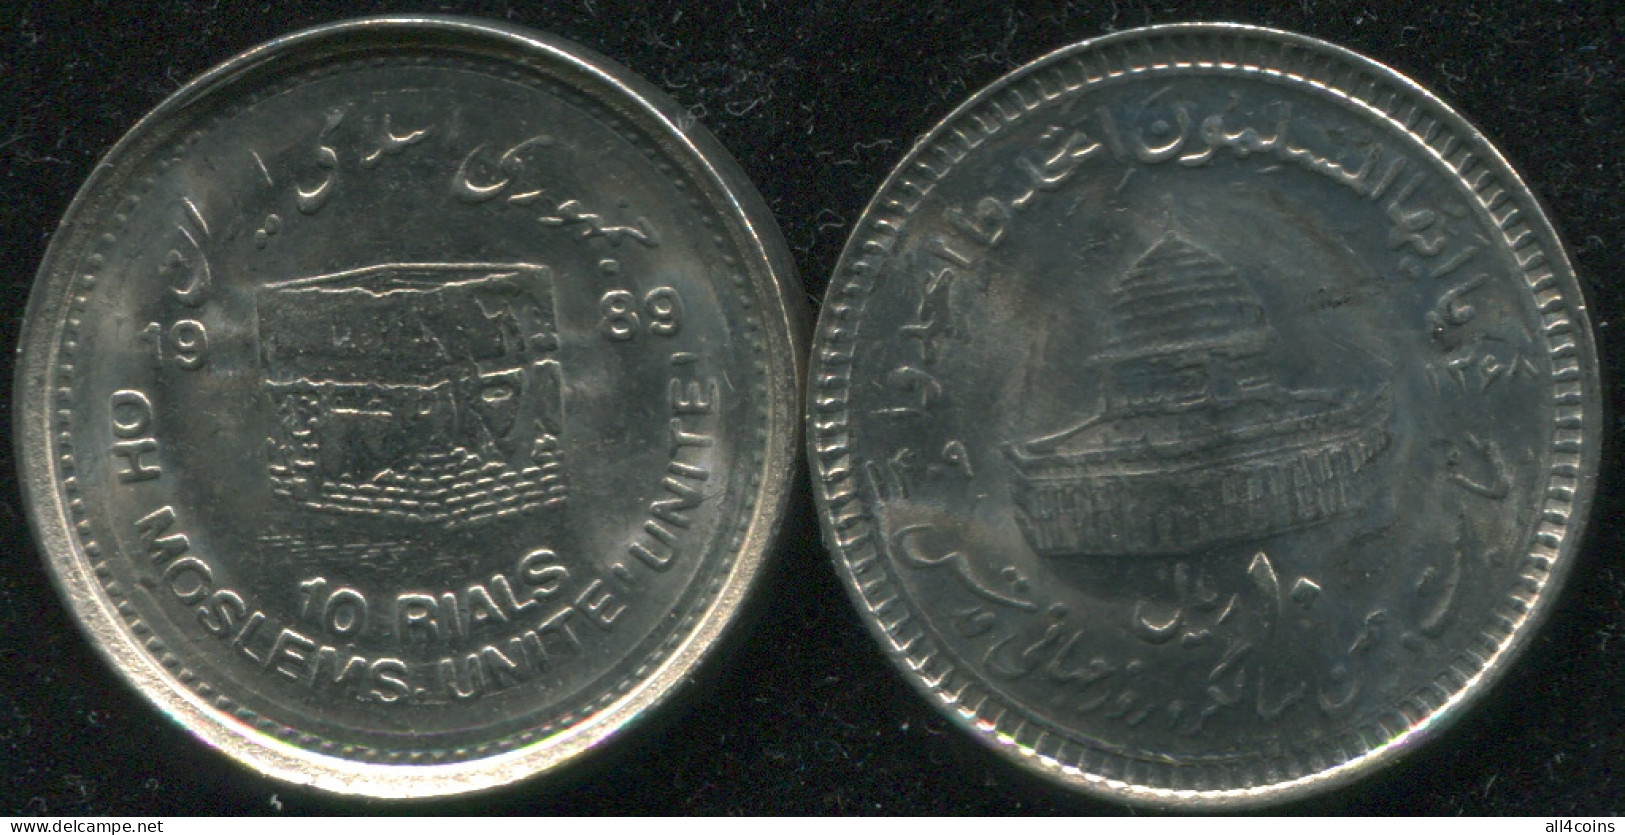 Persia. 10 Rials. 1989 (Coin KM#1253. Unc) Moslem Unity - Iran